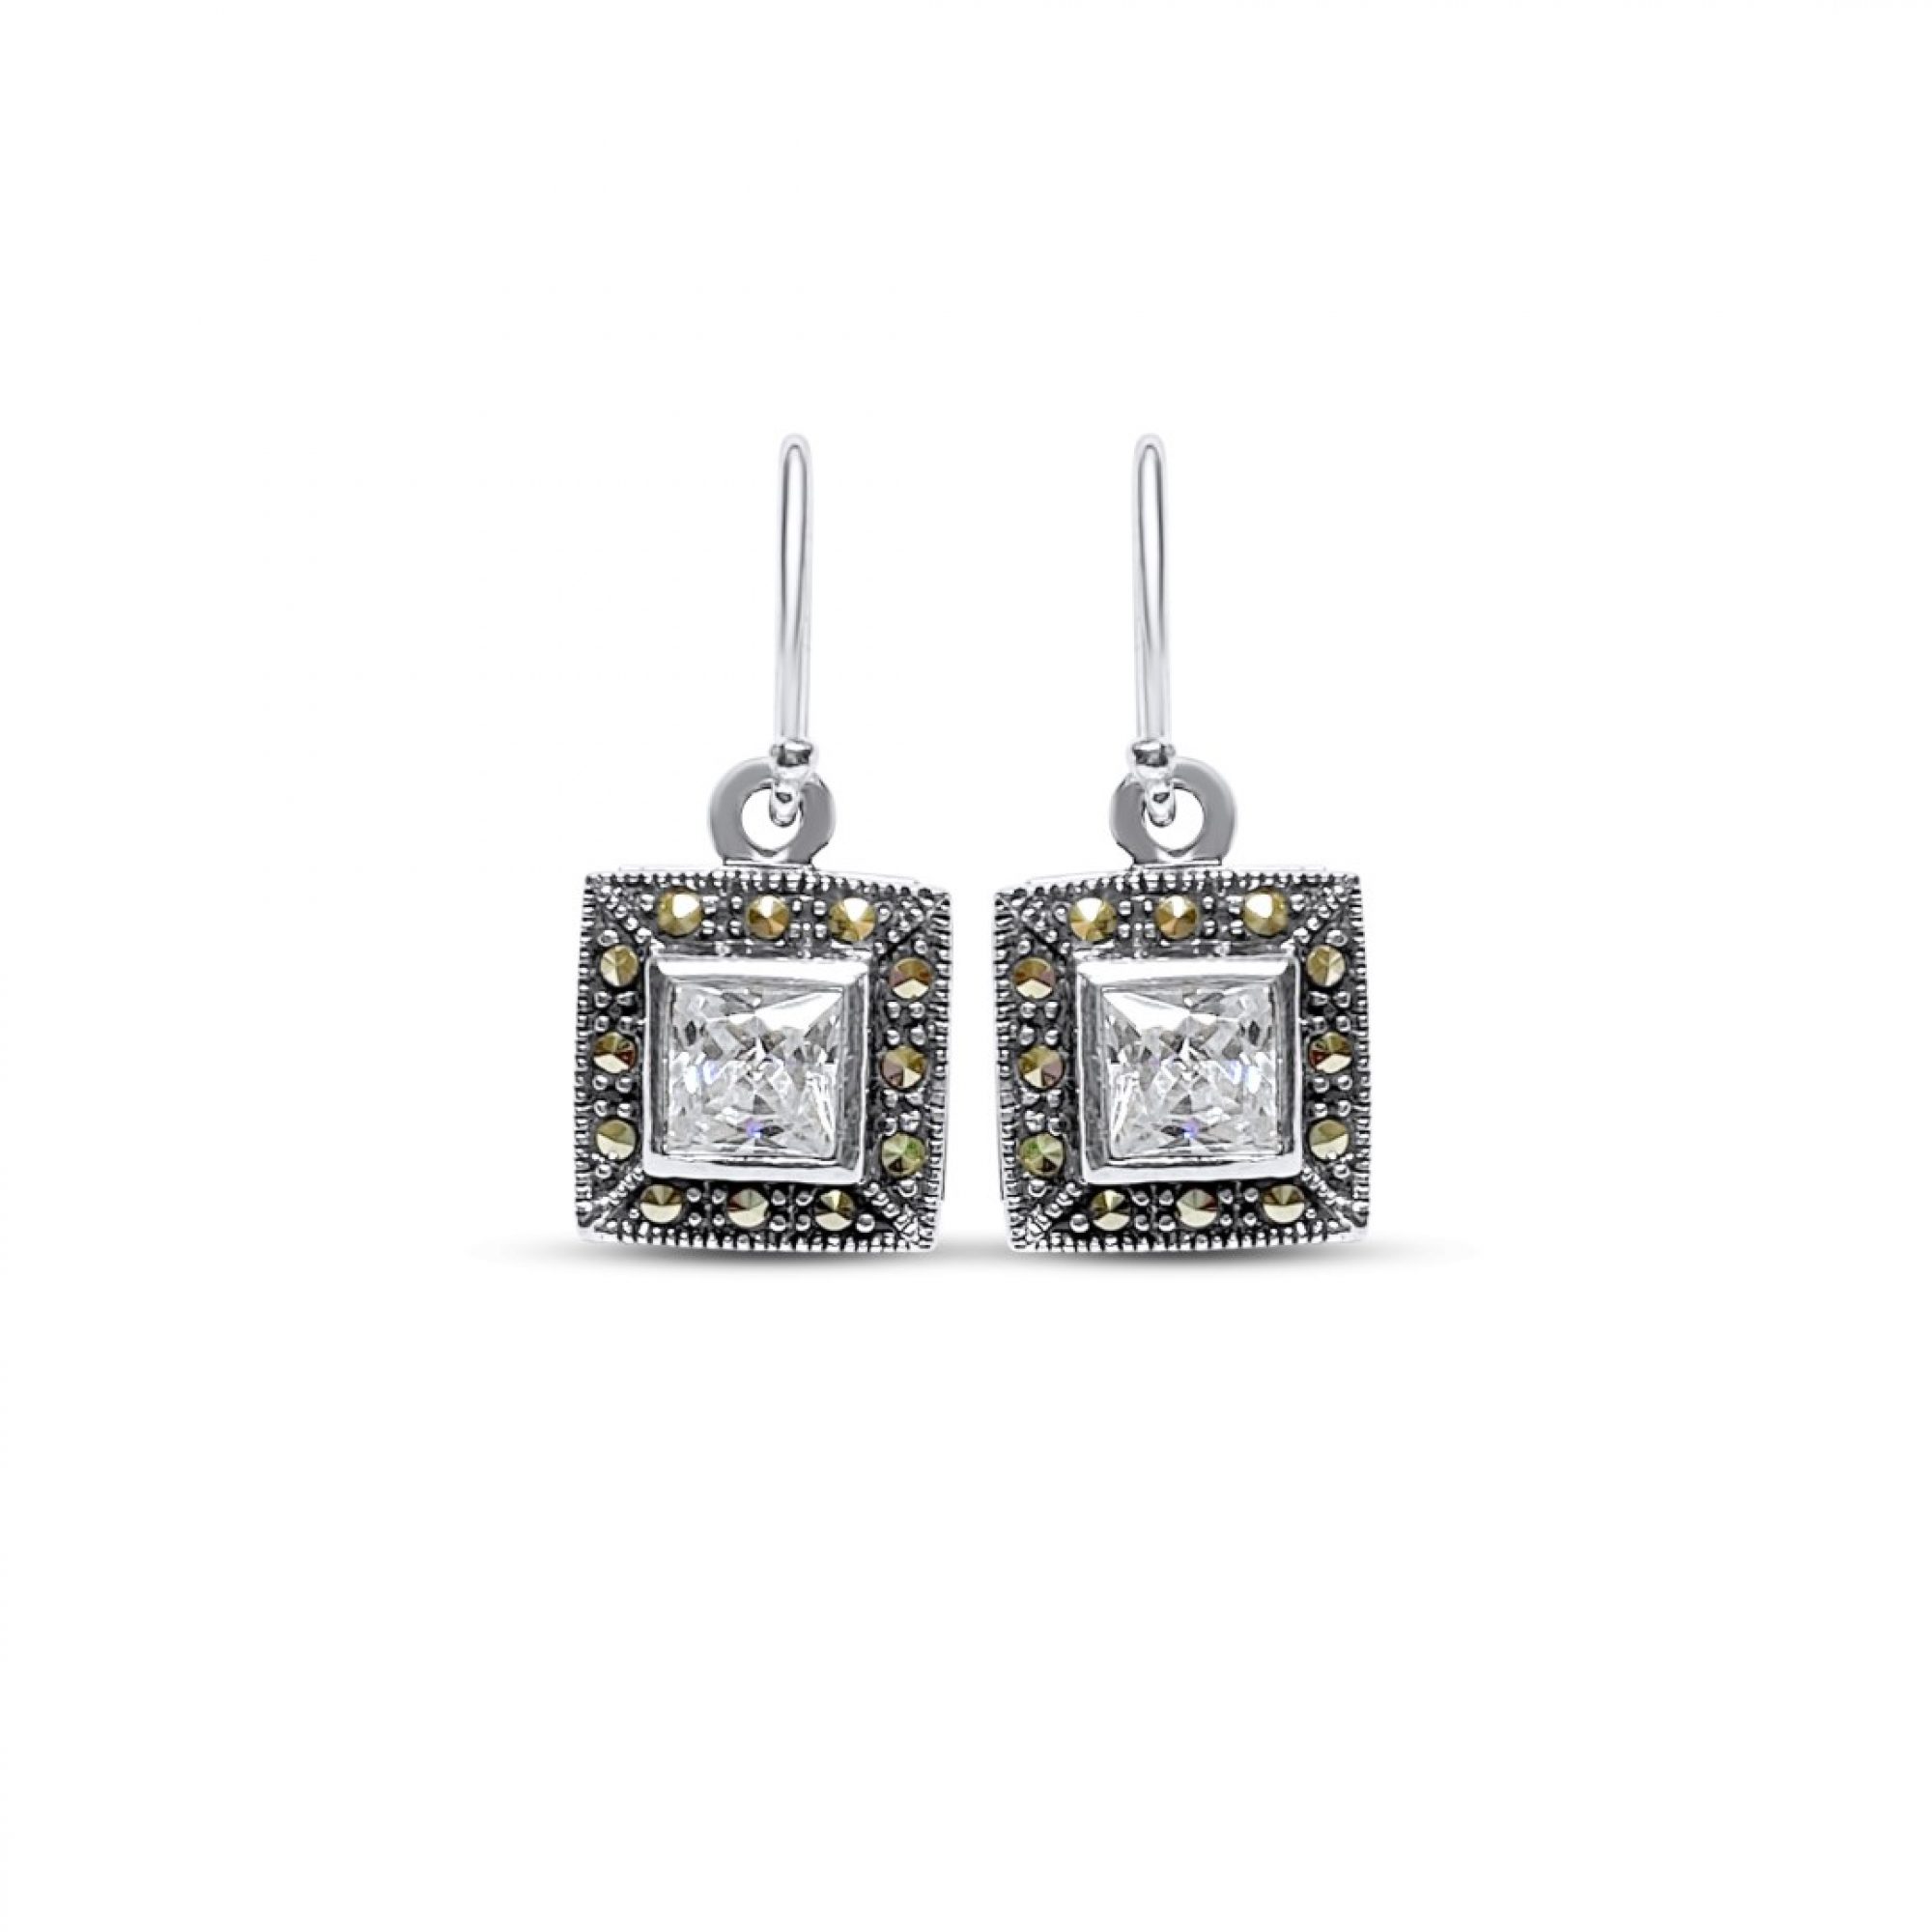 Dangle marcasite earrings with zircon stones